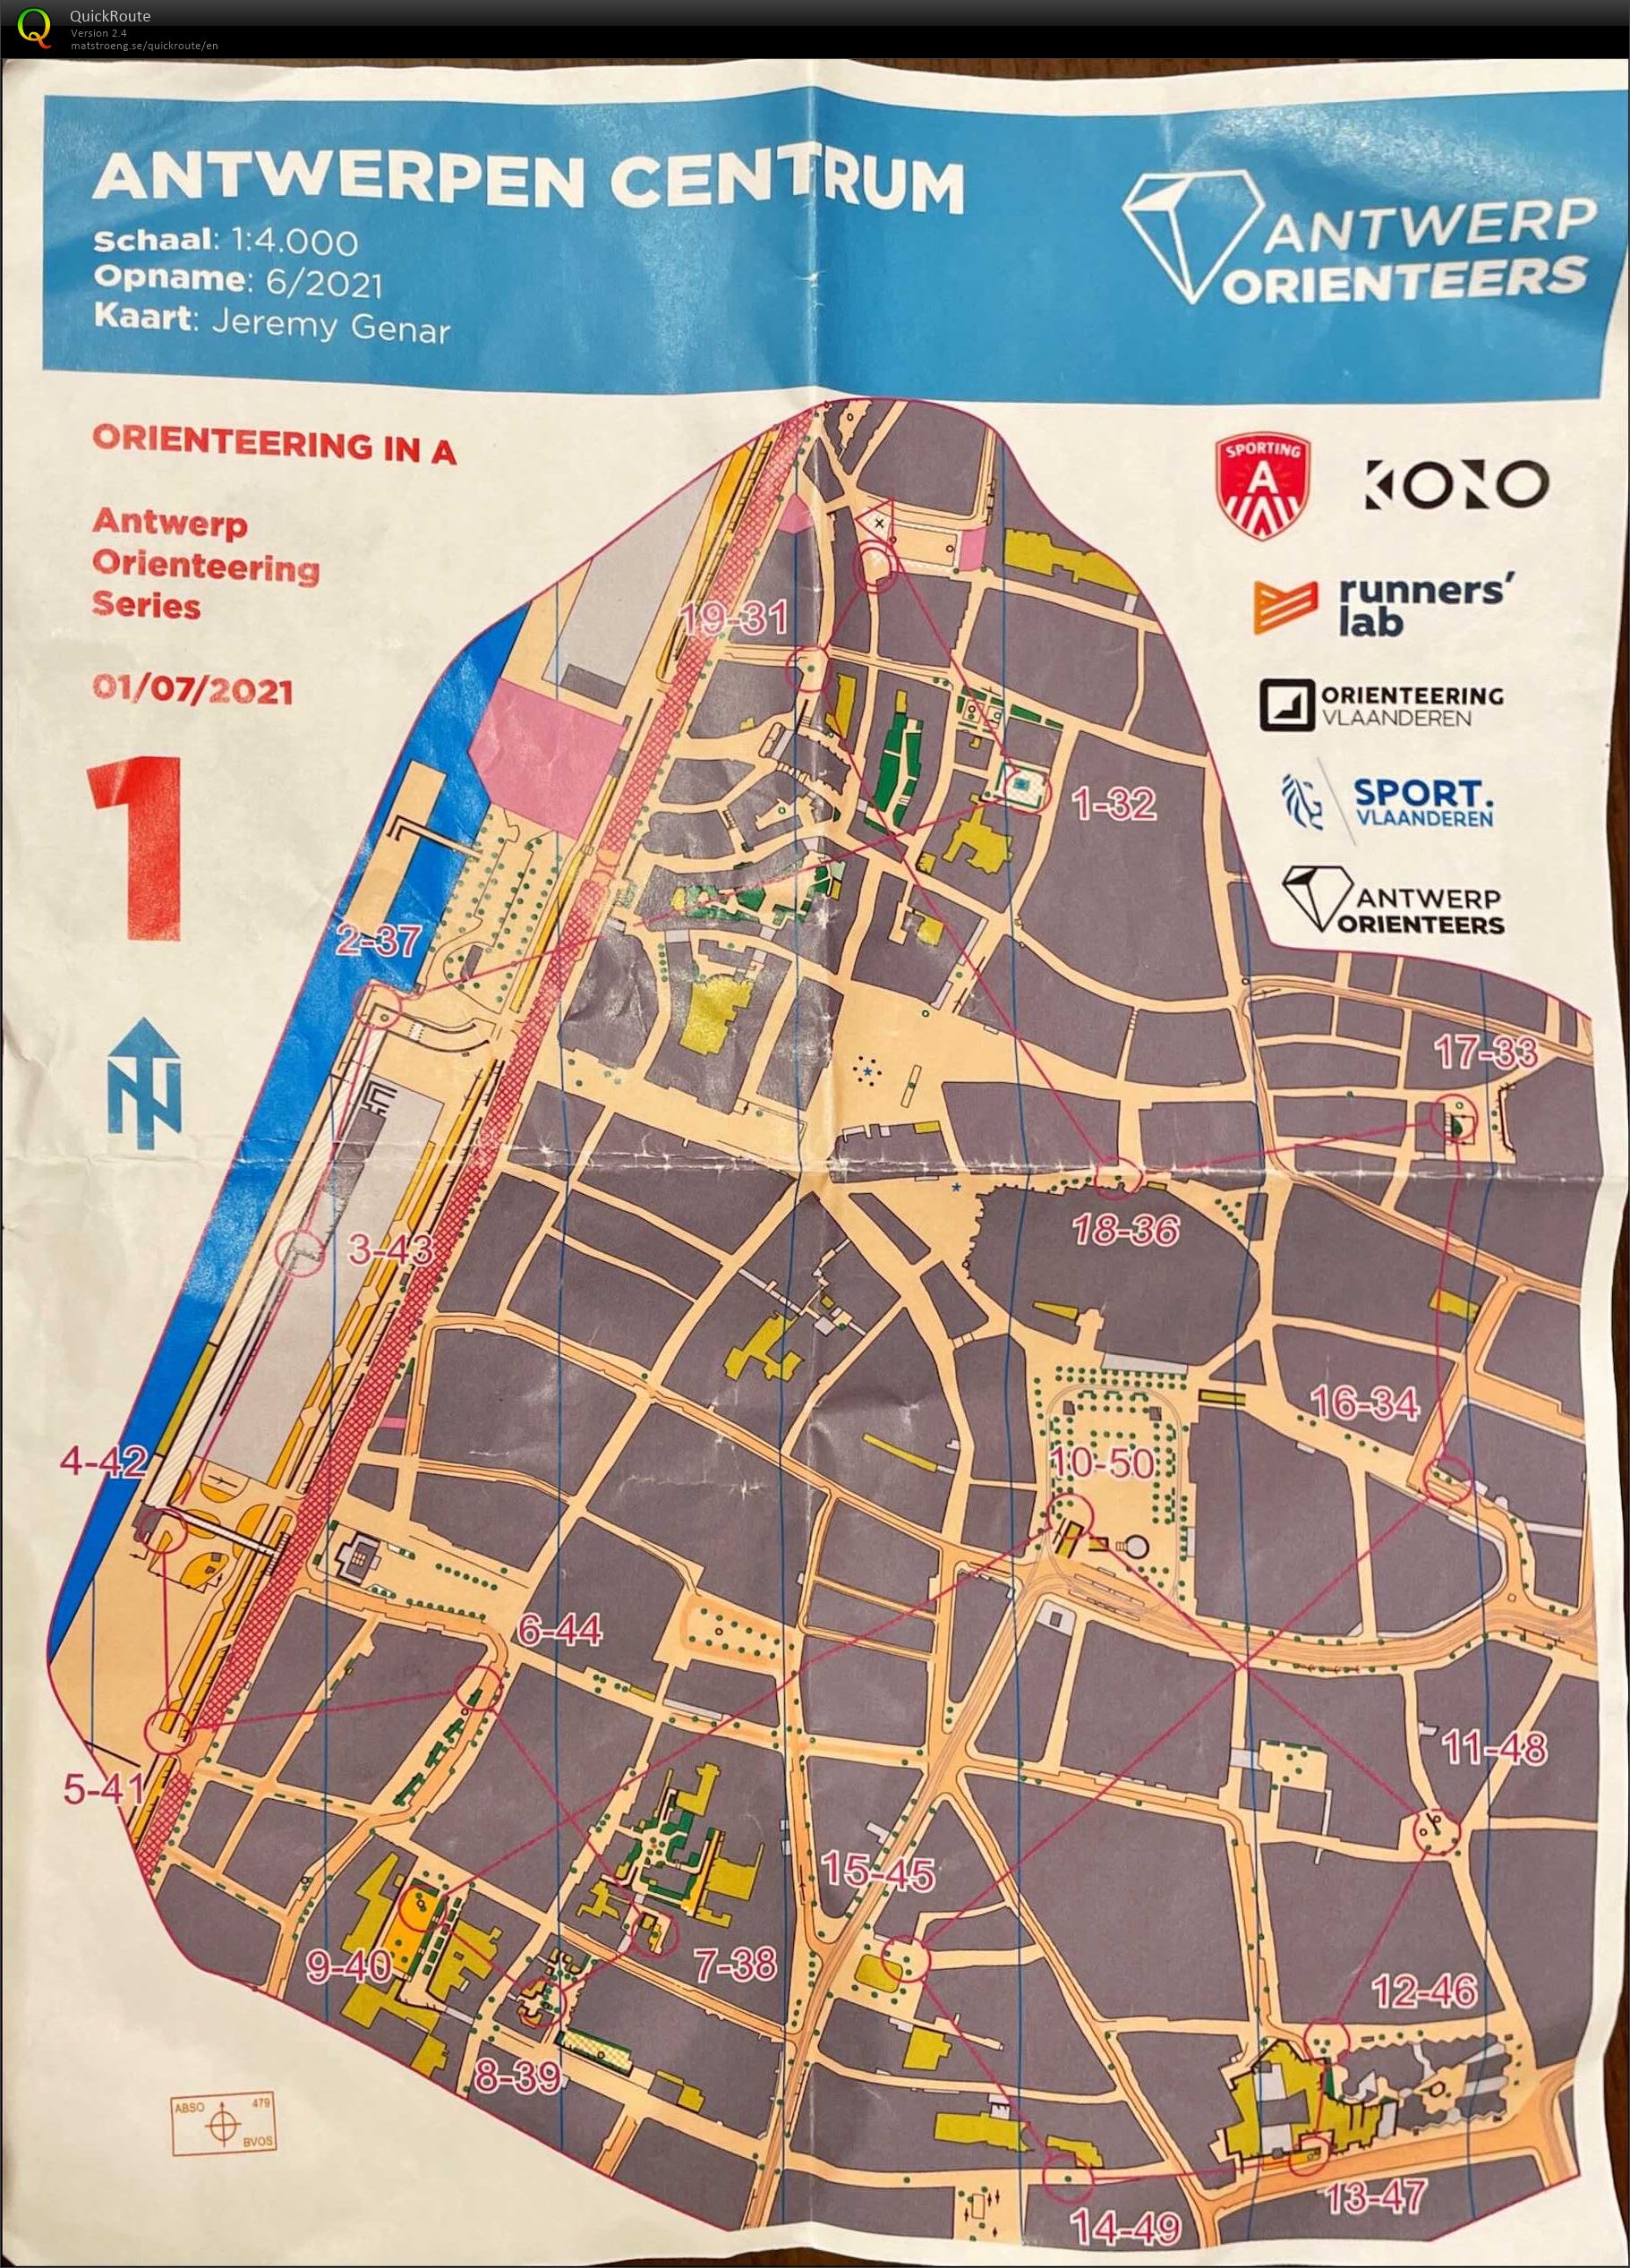 Antwerp Orienteering Series - Antwerpen Centrum - 5K (01.07.2021)